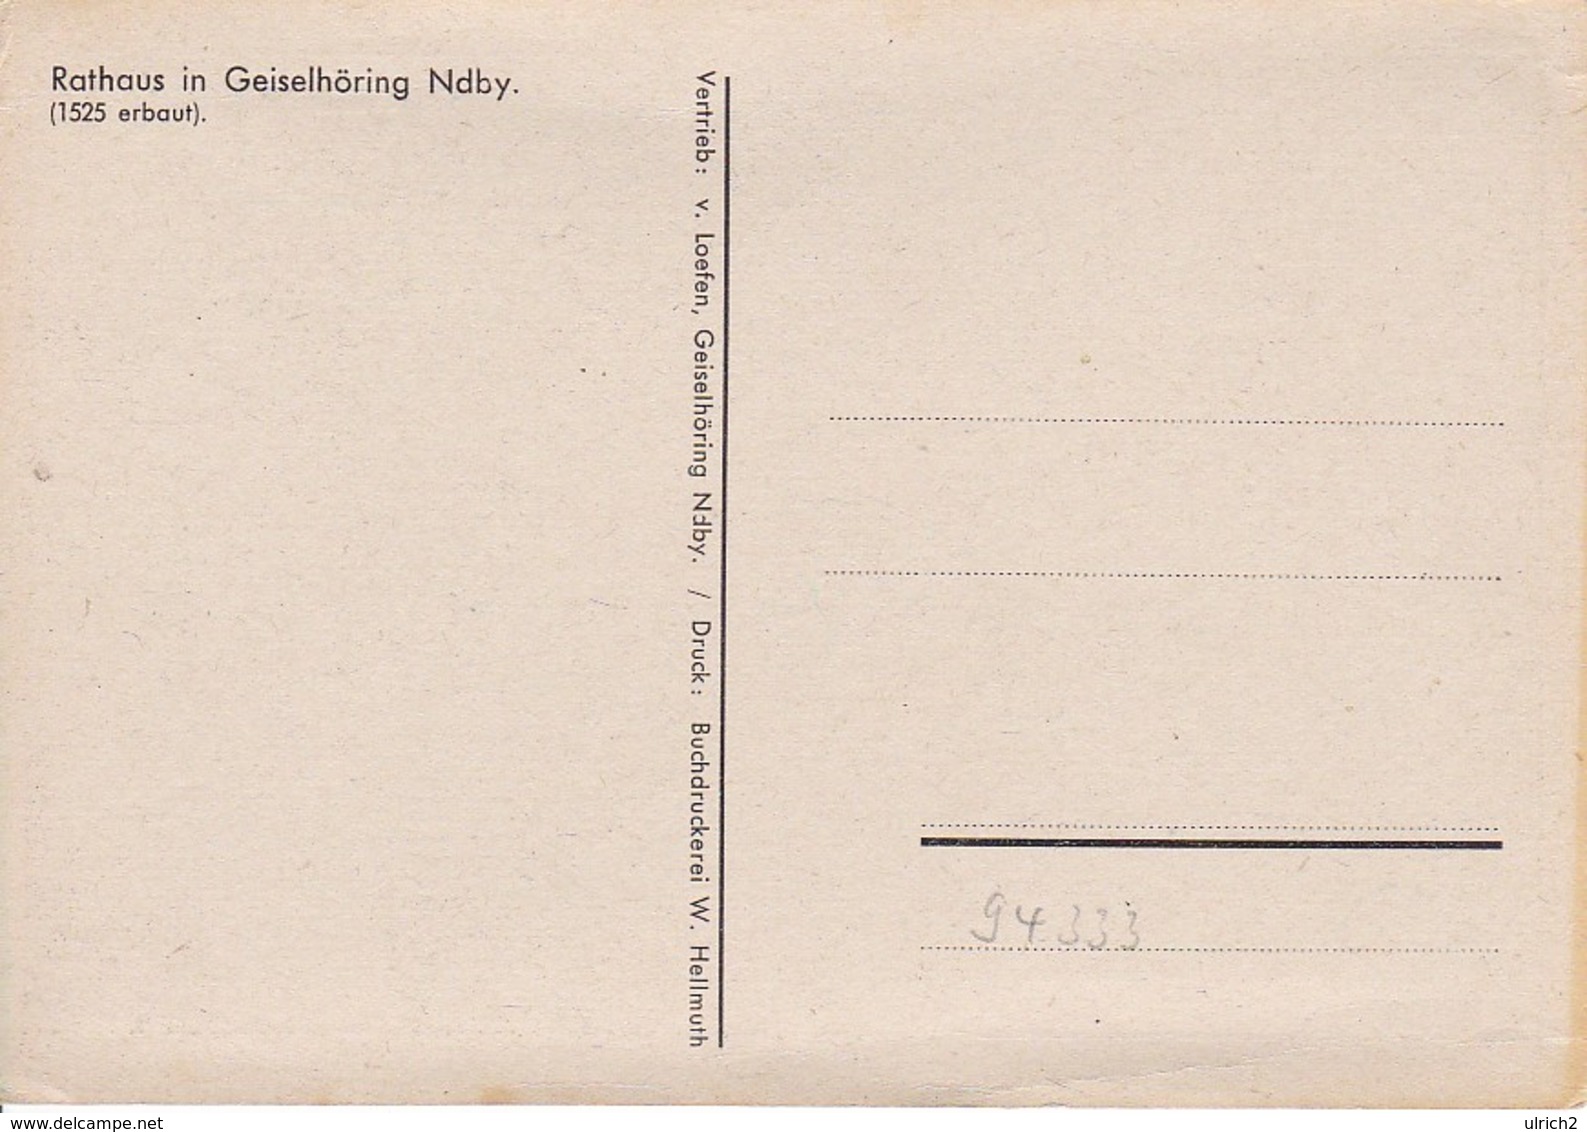 AK Geiselhöring - Rathaus - Niederbayern - Künstlerkarte (35142) - Straubing